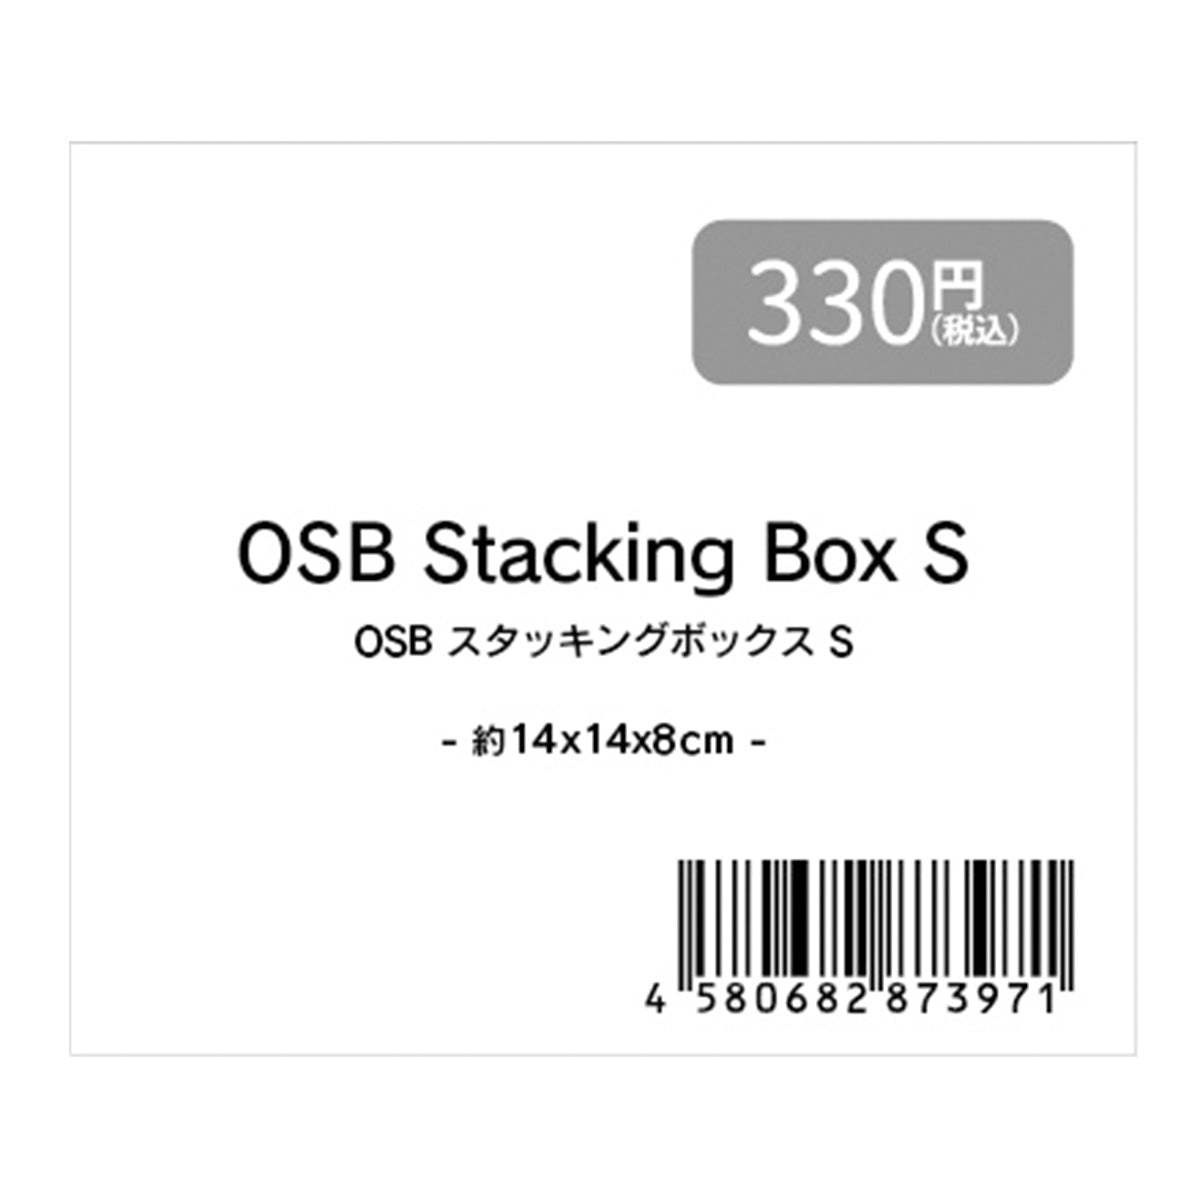 収納ボックス 小物ケース ナチュラル OSBスタッキングボックス S 約14x14x8cm 353366